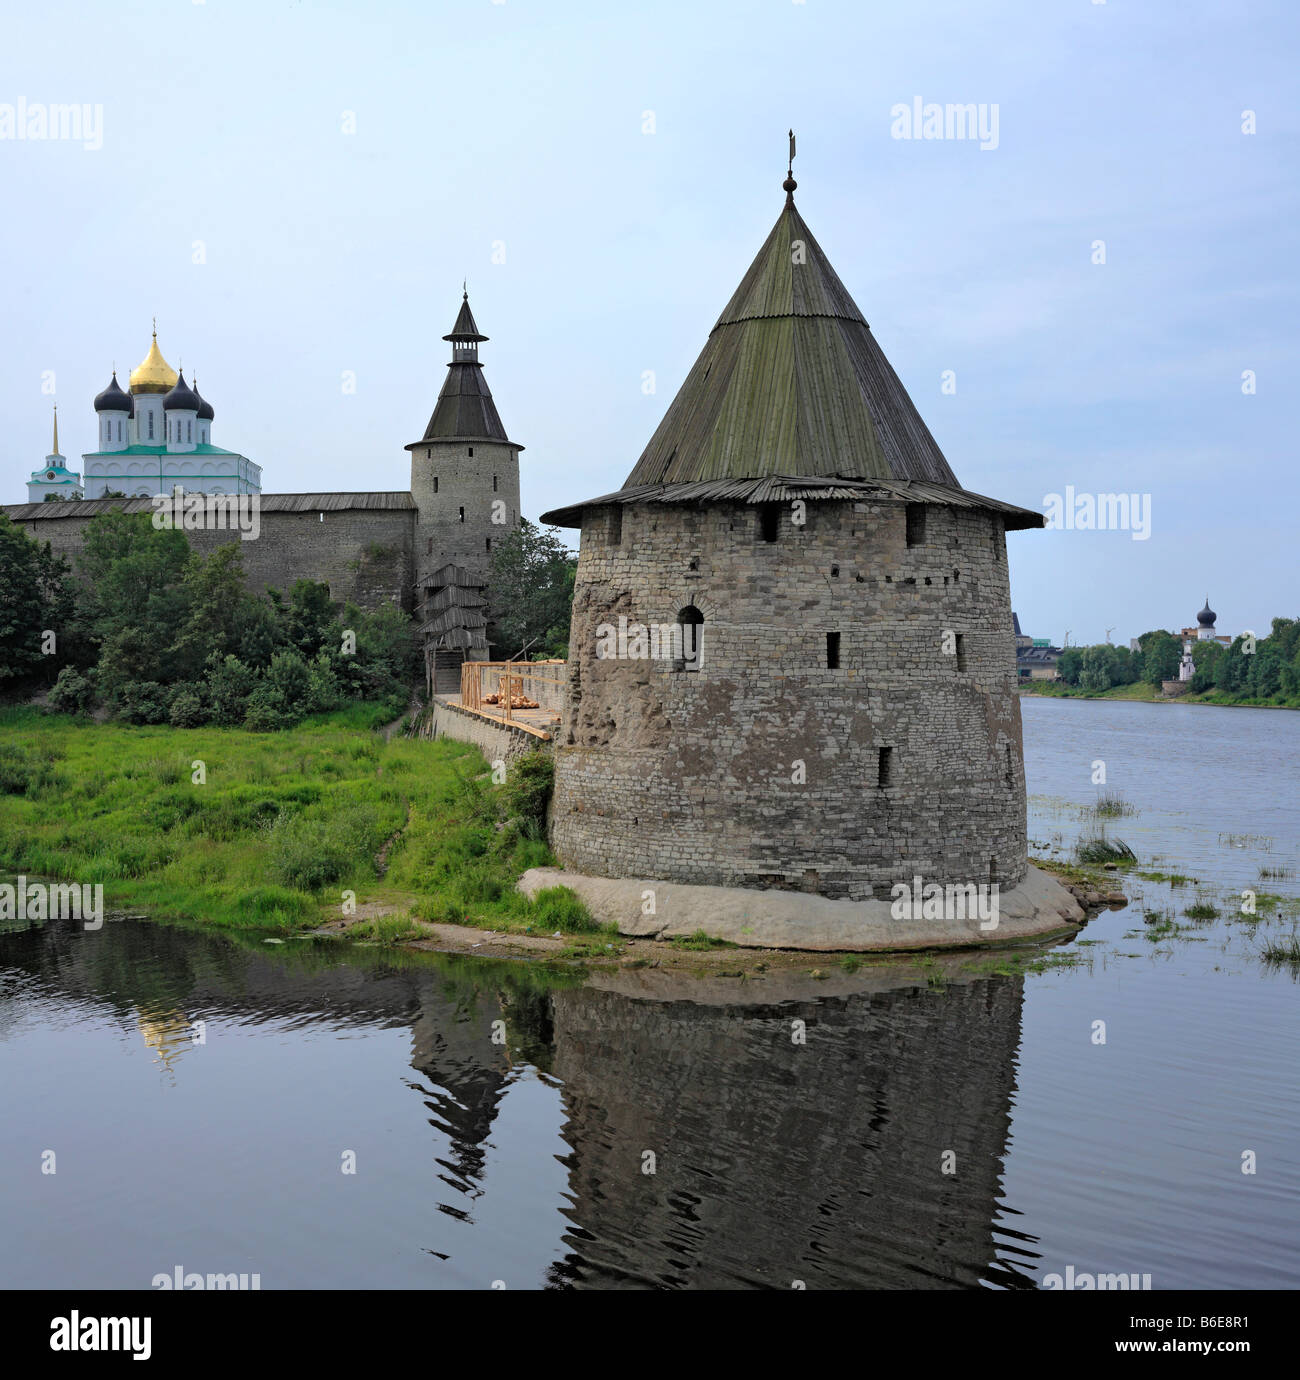 La torre e la parete di Pskov Cremlino fortezza medievale, vista dal fiume Pskova, Pskov Russia Foto Stock